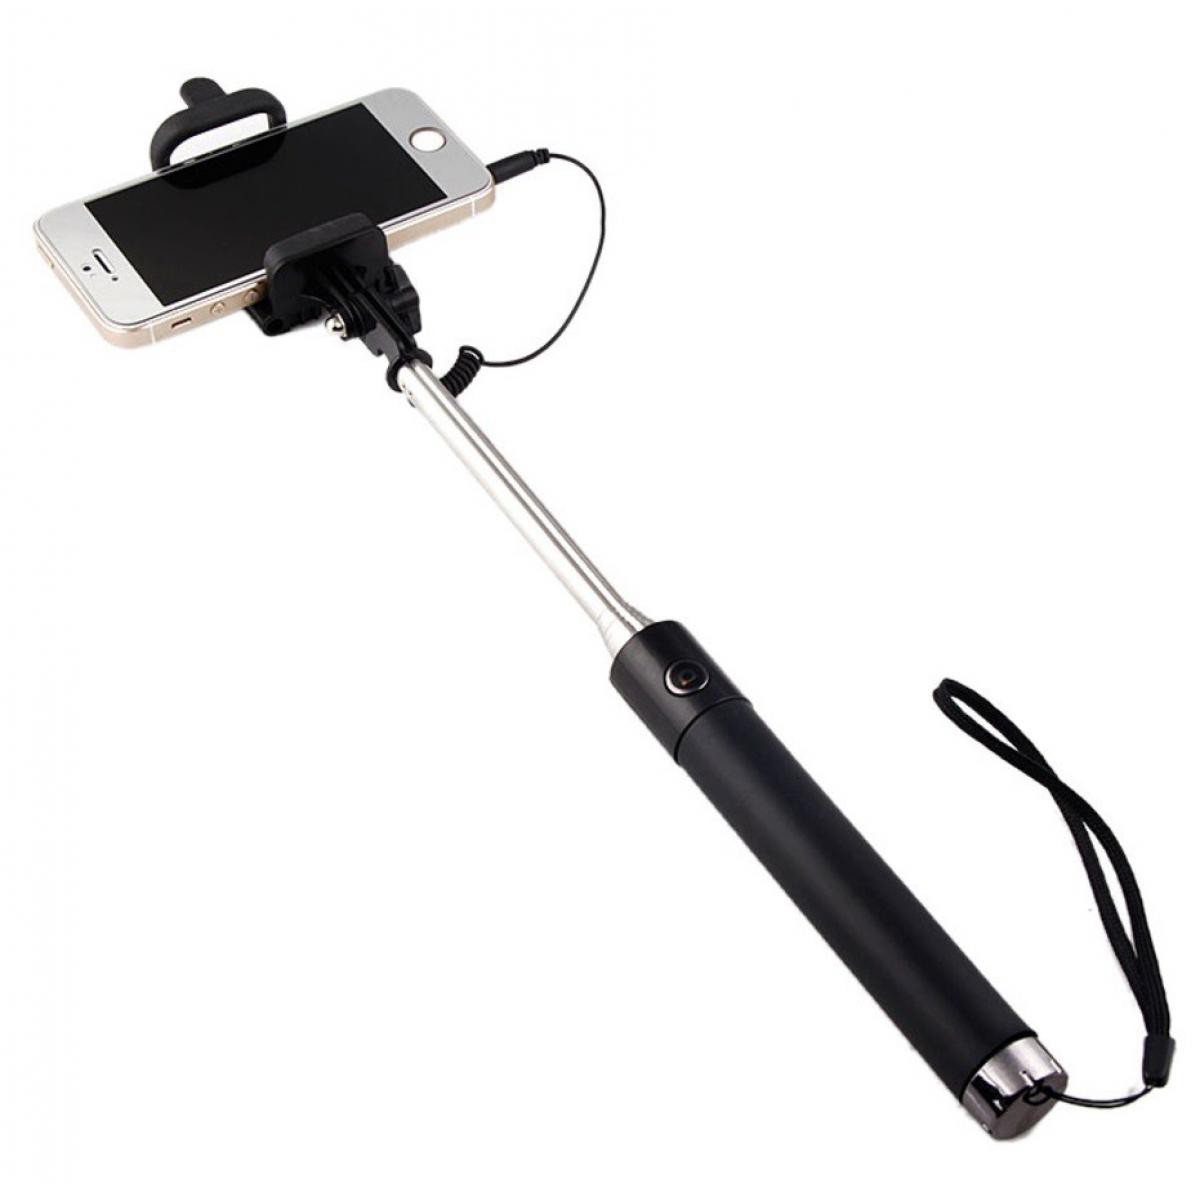 Shot - Selfie Stick Metal pour HUAWEI P30 Pro Smartphone Perche Android IOS Reglable Bouton Photo Cable Jack Noir - Autres accessoires smartphone